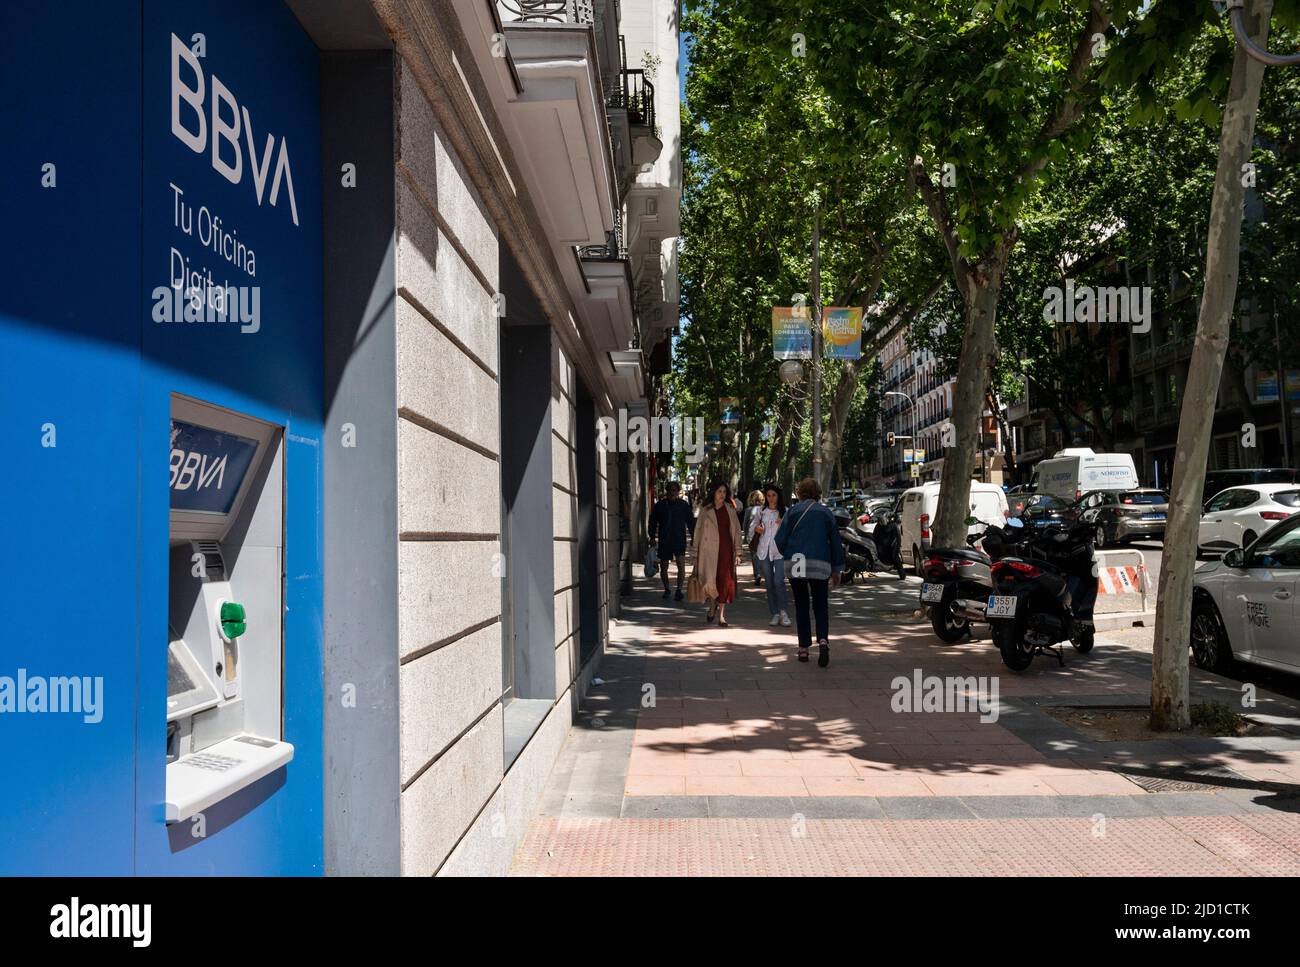 Madrid, España. 25th de mayo de 2022. Un cajero automático en el banco español Banco Bilbao Vizcaya Argentaria SA (BBVA). (Imagen de crédito: © Xavi Lopez/SOPA Images via ZUMA Press Wire) Foto de stock